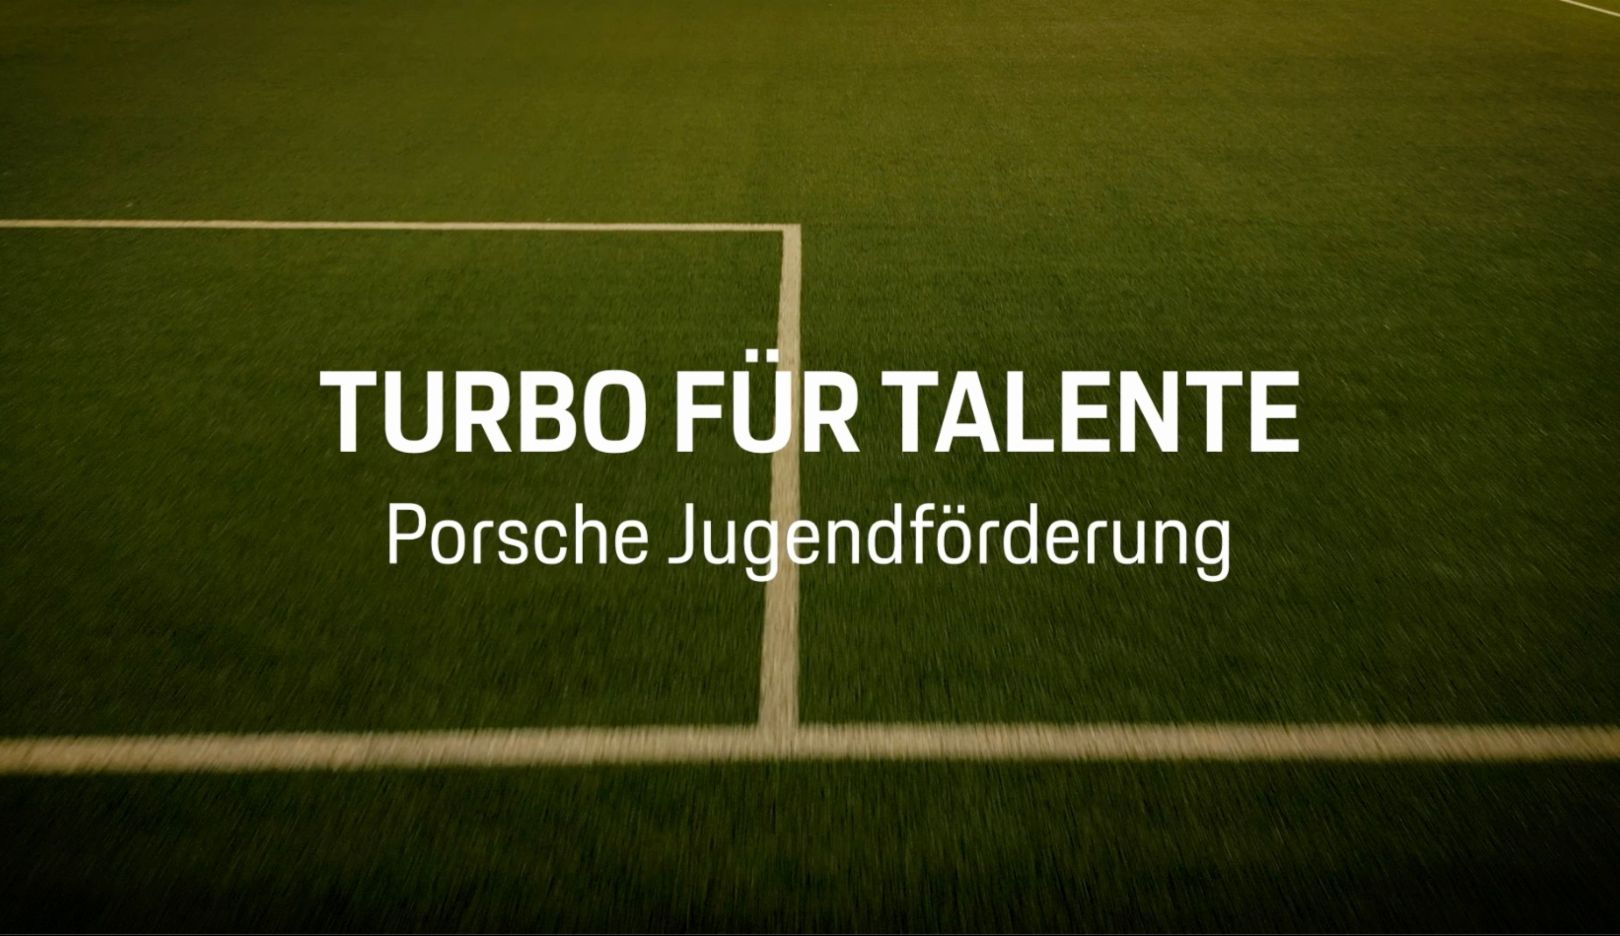 Turbo für Talente, Porsche Jugendförderung, Stadion-Clip Borussia Mönchengladbach, 2023, Porsche AG